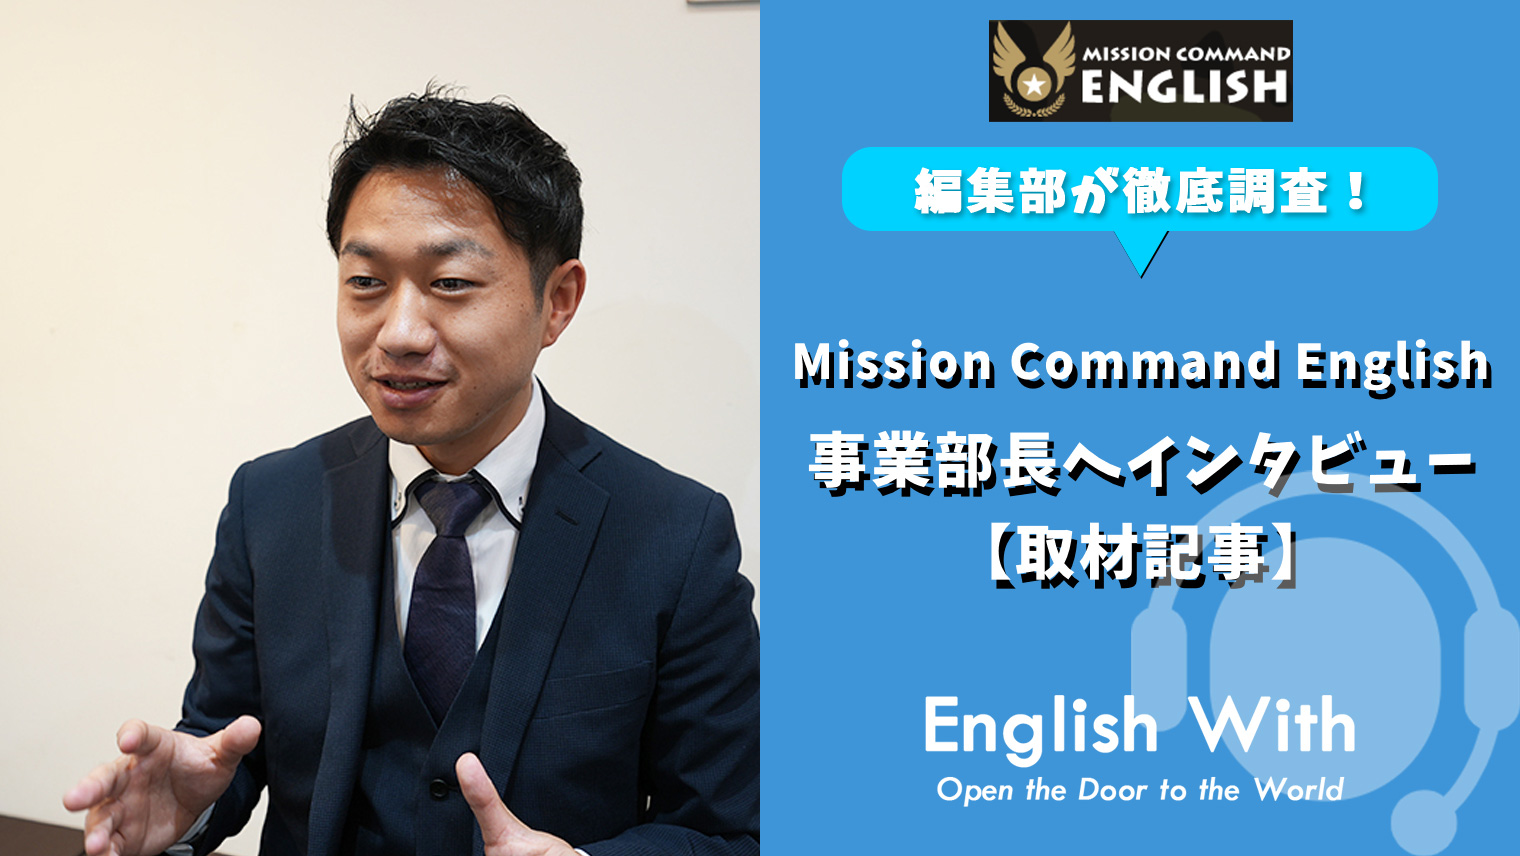 Mission Command Englishを徹底取材 事業部長へインタビュー 取材記事 おすすめ英会話 英語学習の比較 ランキング English With